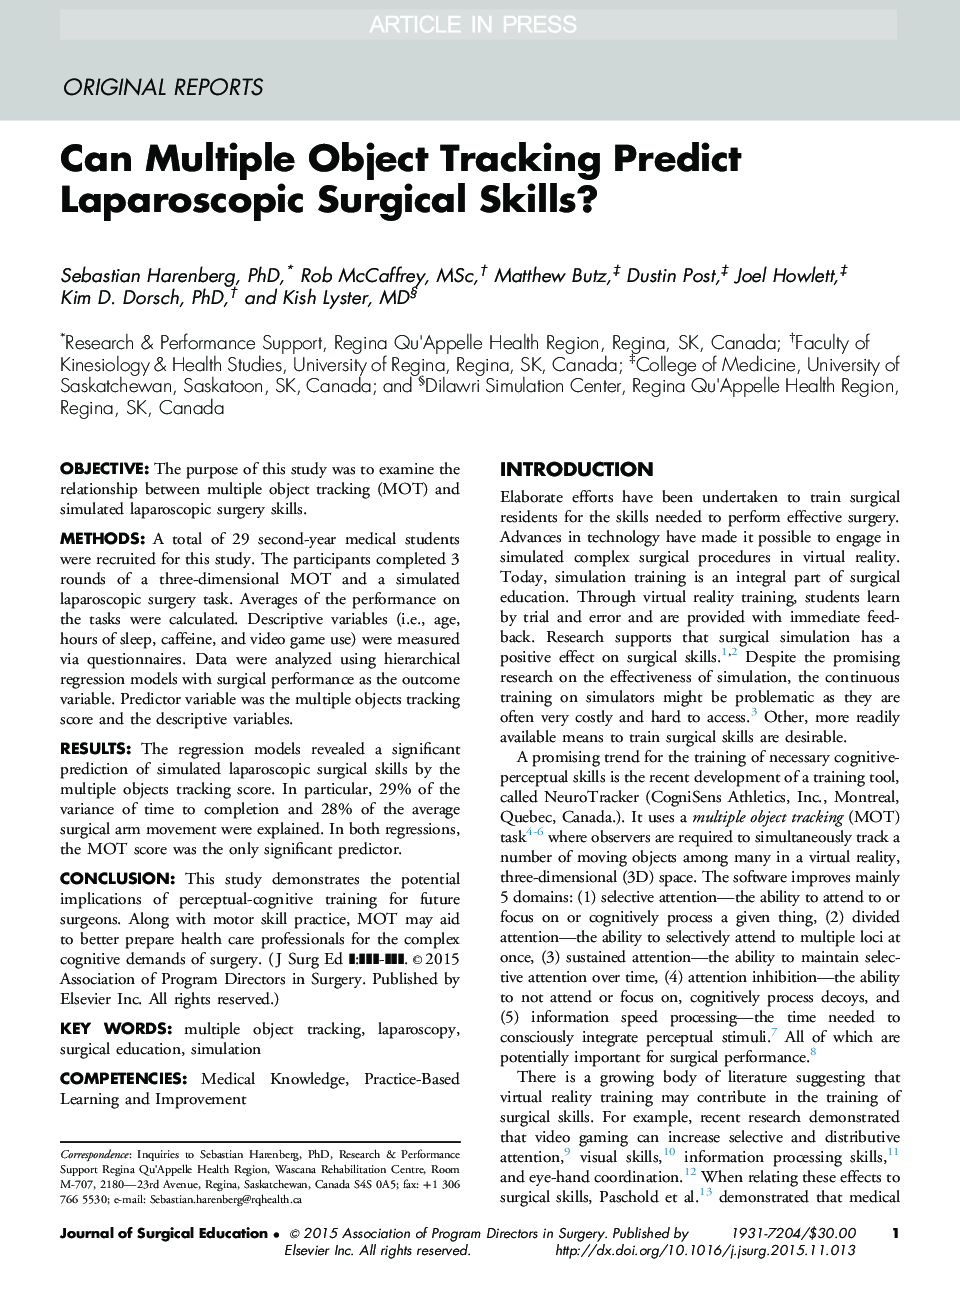 آیا می توان ردیابی شی چندگانه مهارت های جراحی لاپاروسکوپی را پیش بینی کرد؟ 